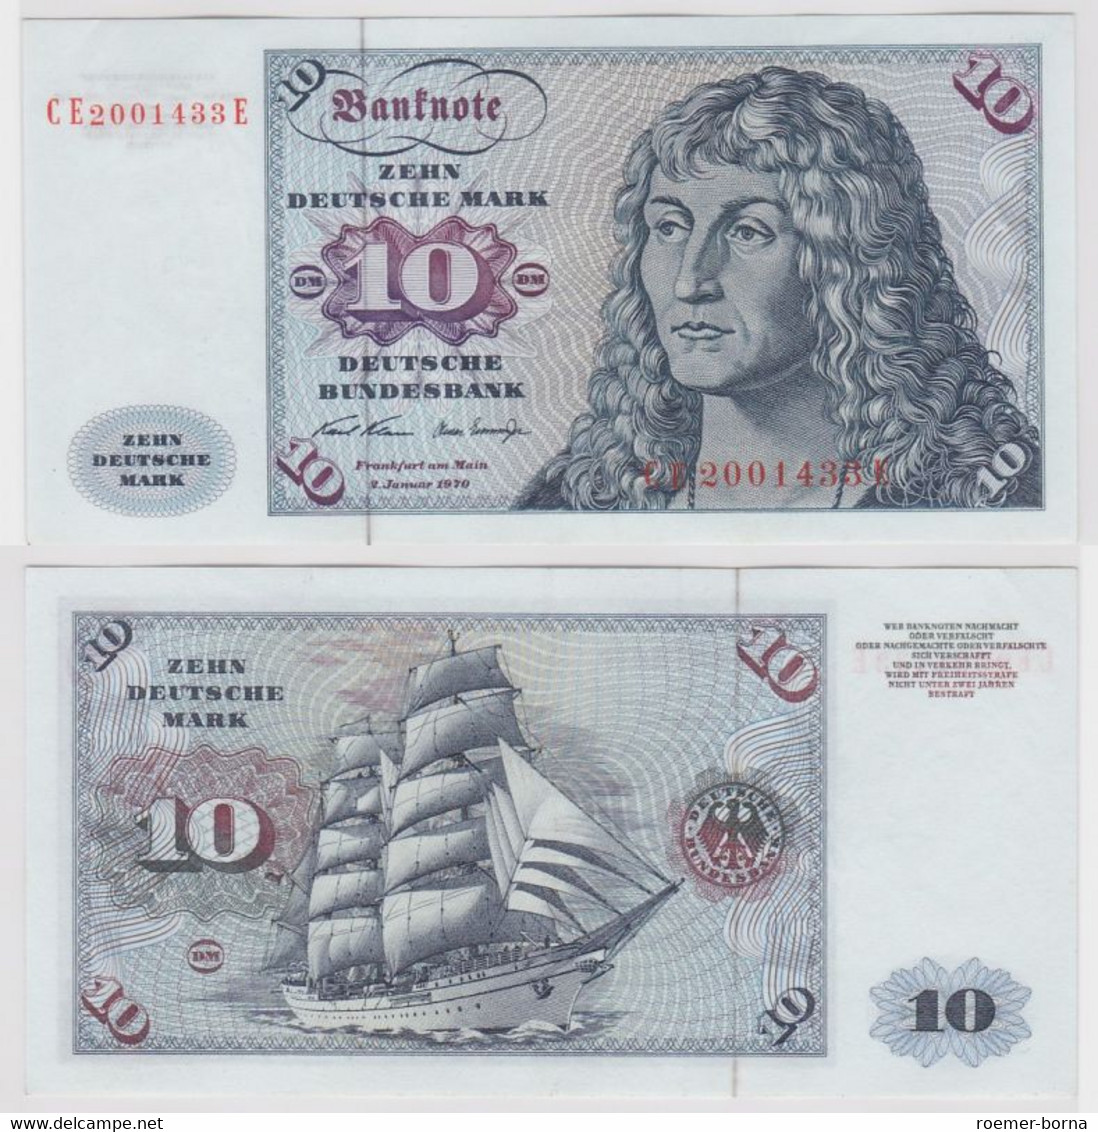 T147487 Banknote 10 DM Deutsche Mark Ro. 270b Schein 2.Jan. 1970 KN CE 2001433 E - 10 DM